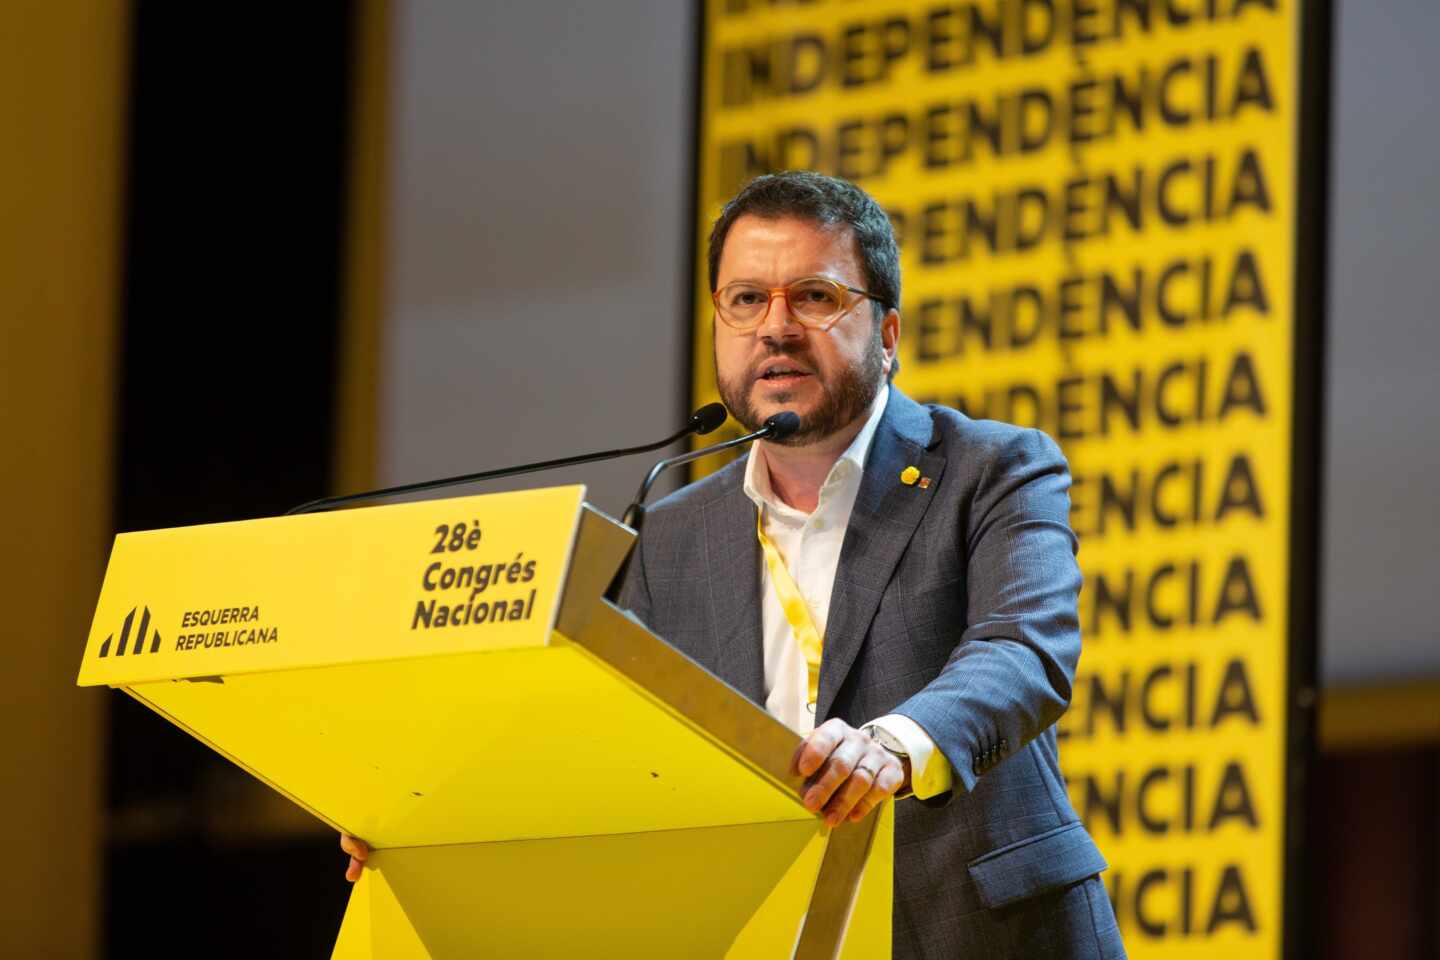 Aragonés: "La nueva etapa solo se puede abrir si la política desplaza a la represión, ¿se entiende?"